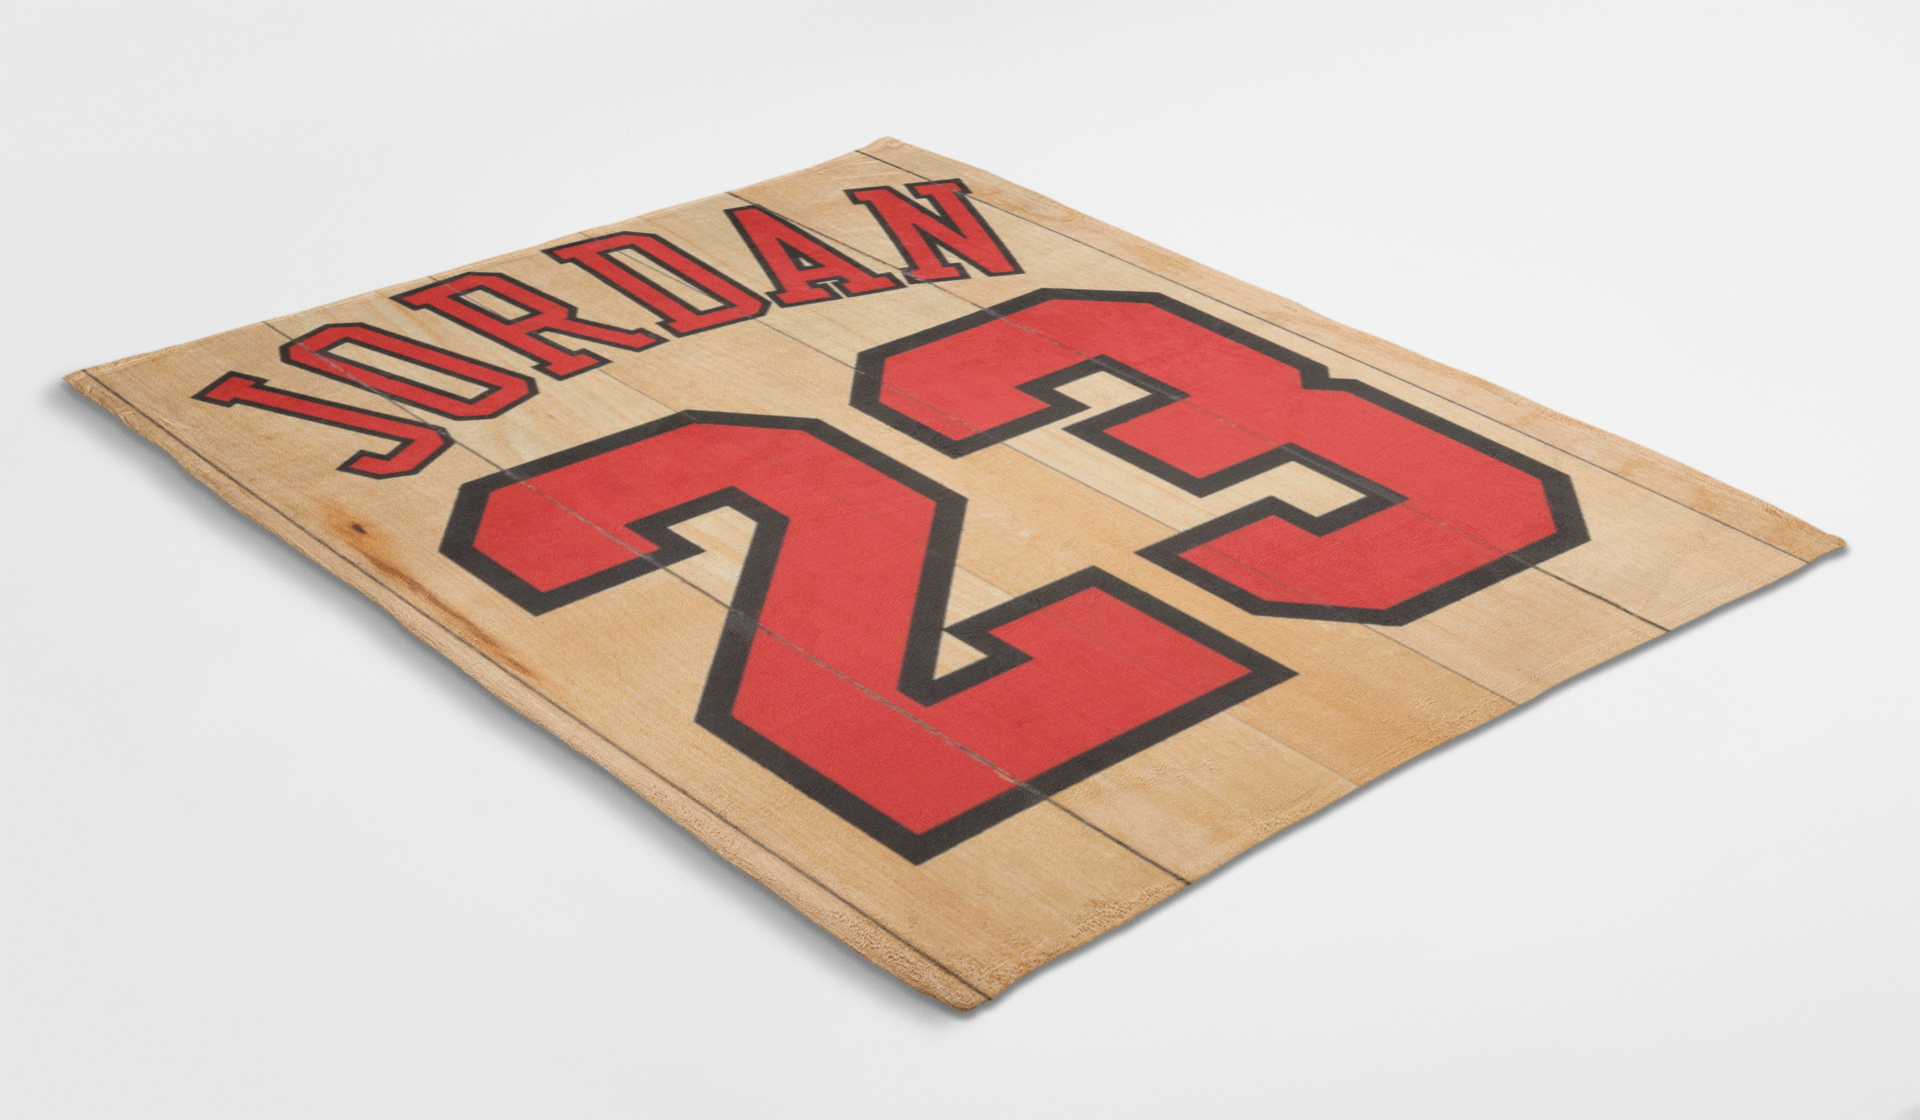 Michael Air Legend 23 Jordan On Wood Blanket